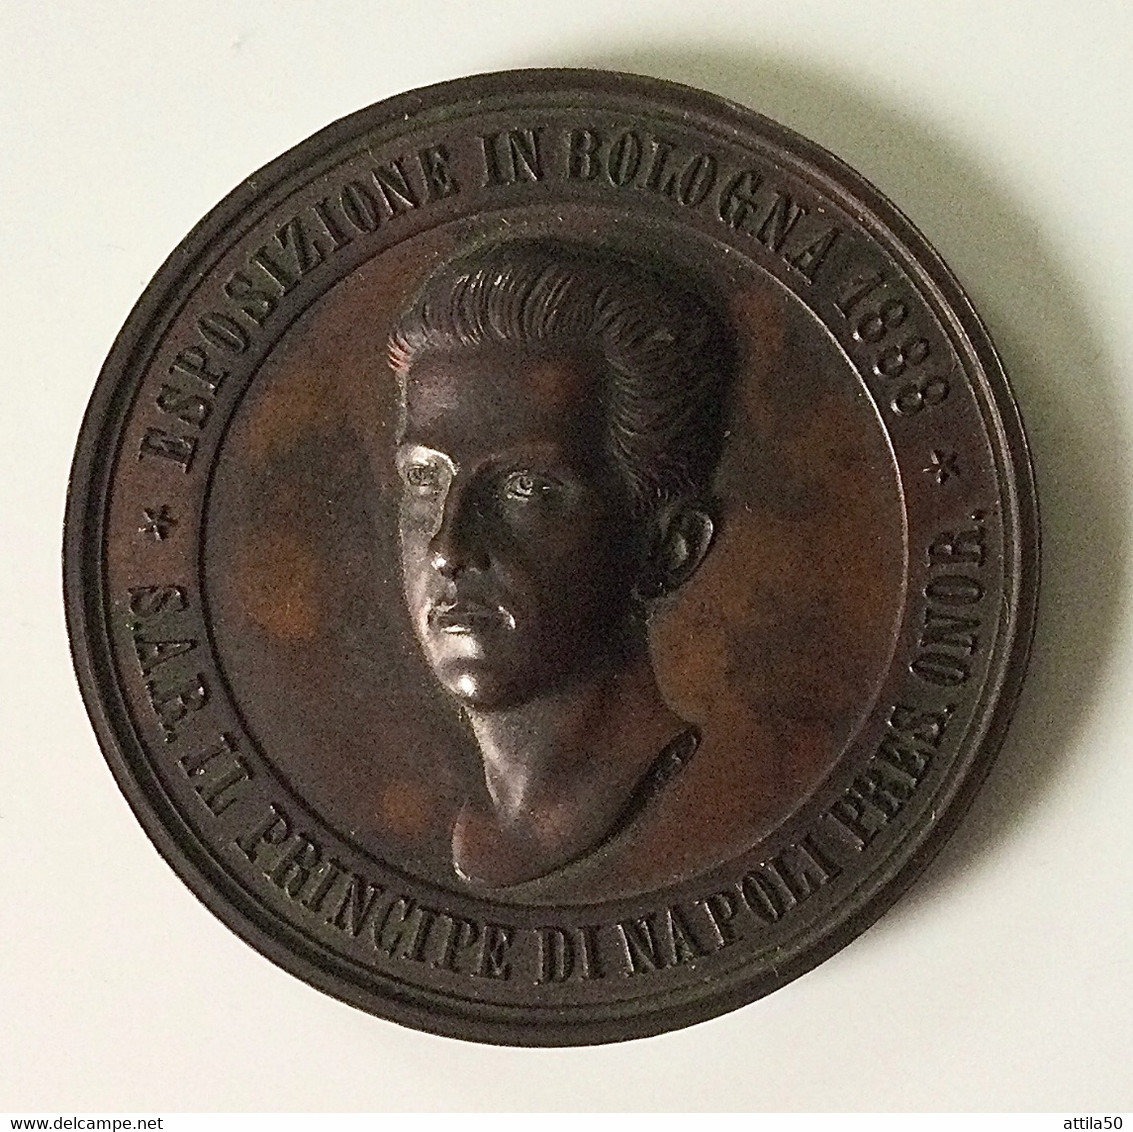 S.A.R. Il Principe Di Napoli - Medaglia Di Bronzo, Diametro Mm.40 Gr.28,9 - SPL, Del 1888. - Adel